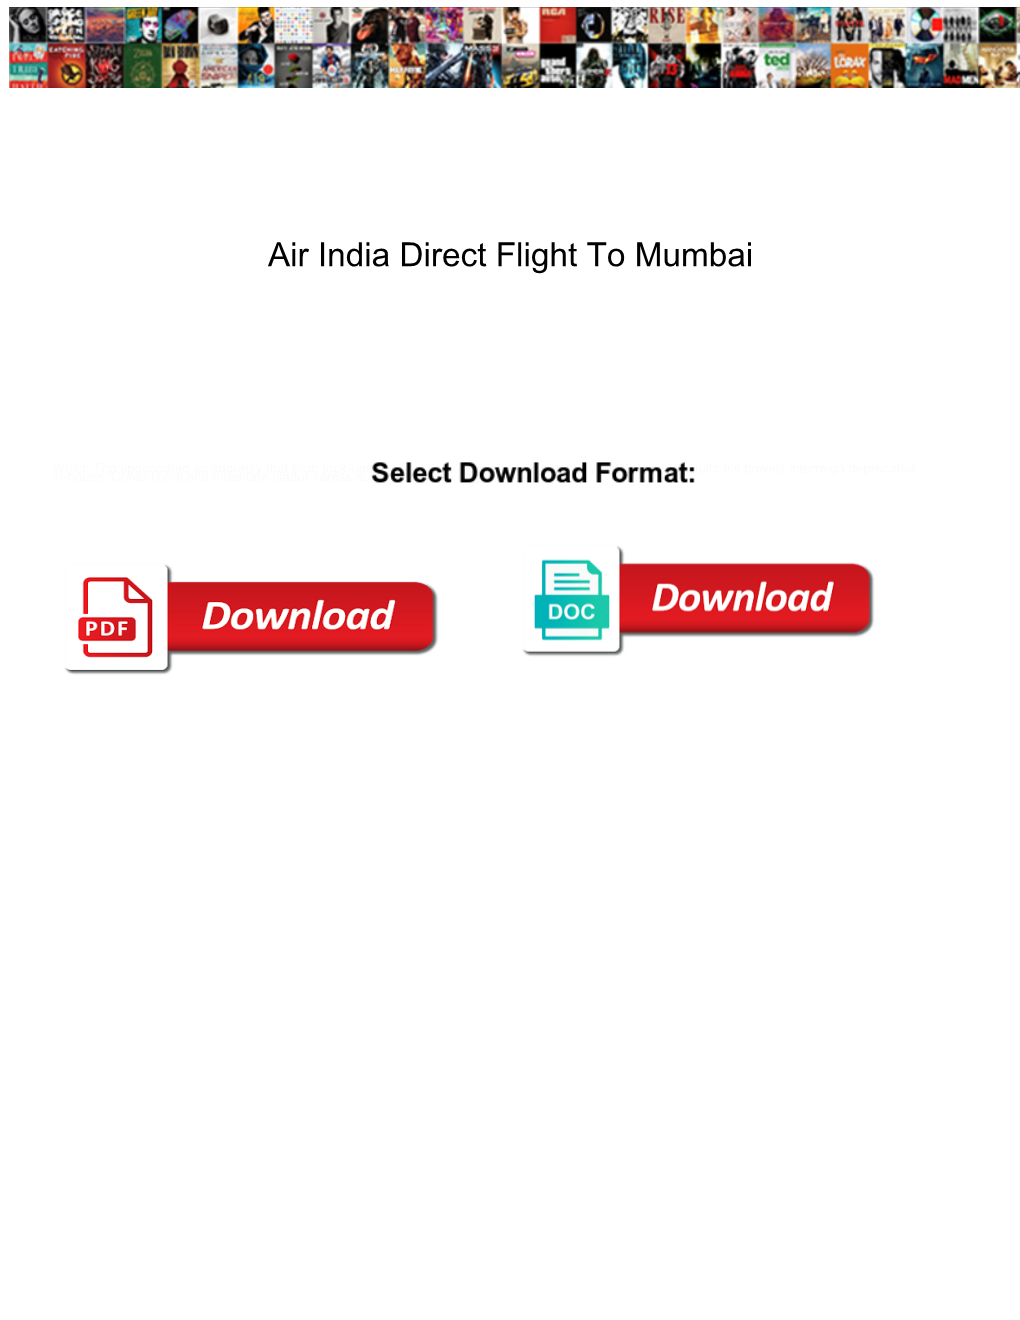 Air India Direct Flight to Mumbai